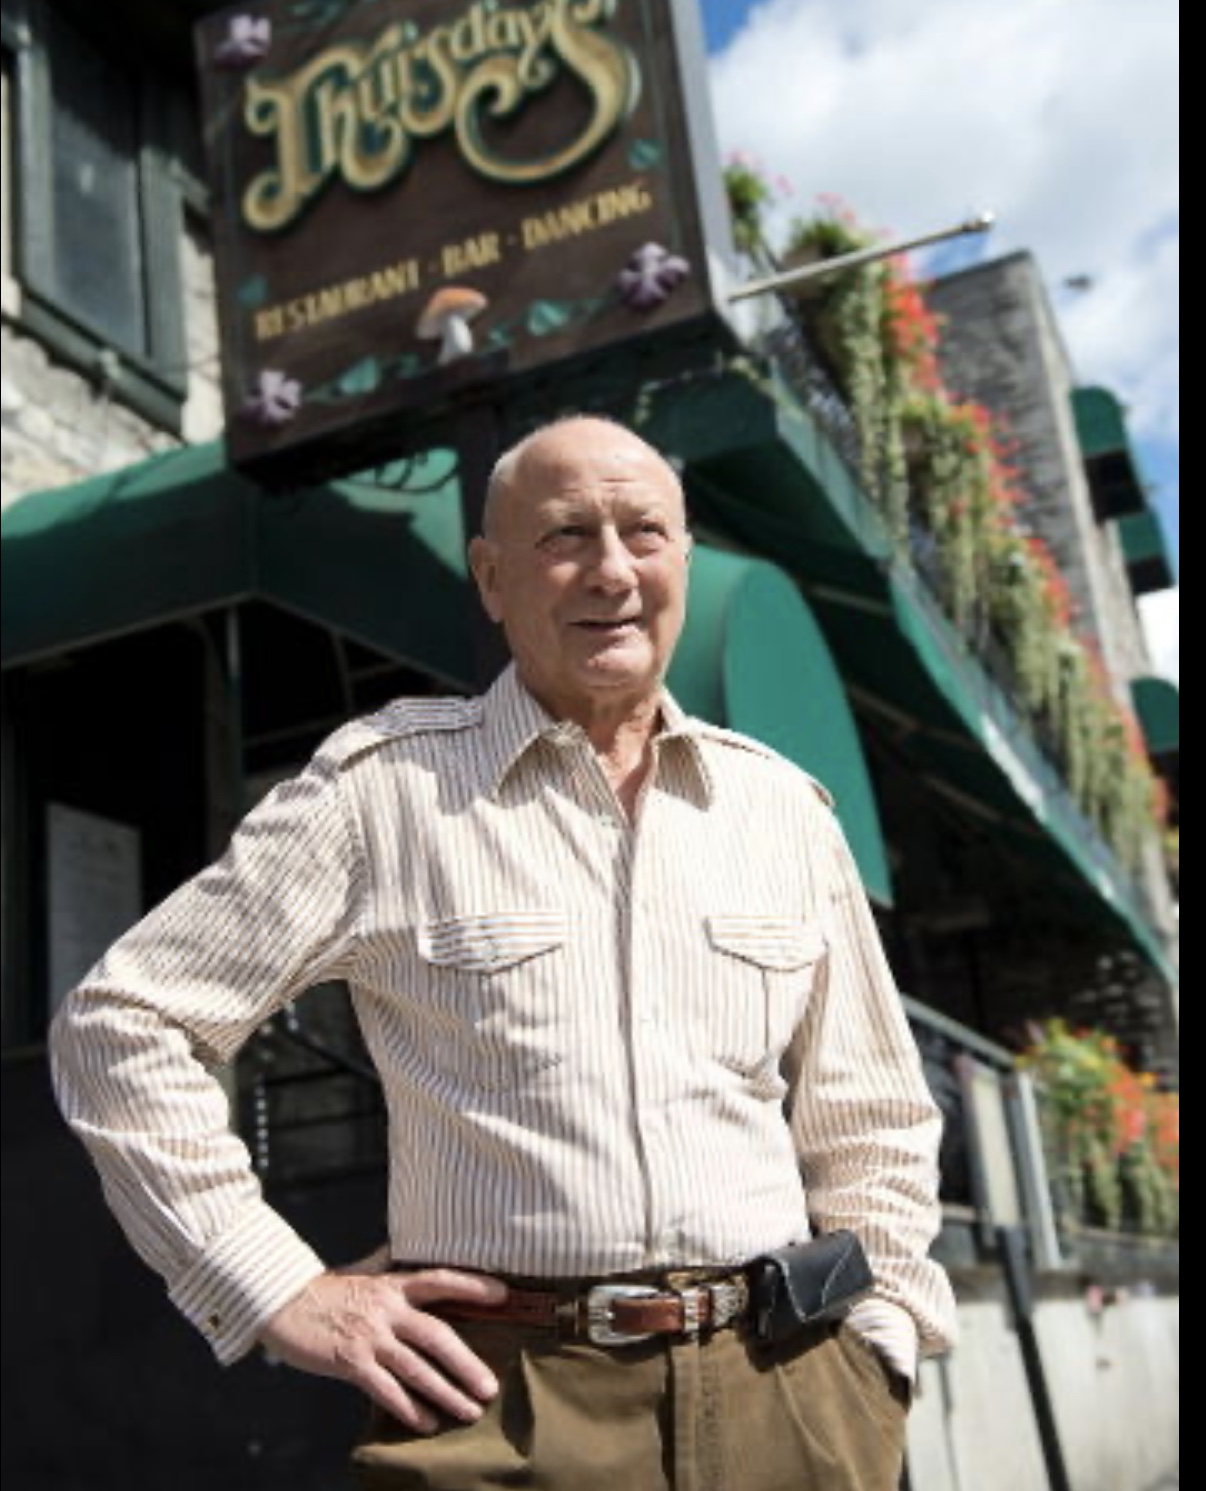 Un homme âgé debout devant un restaurant, marquant la fin d'une époque.